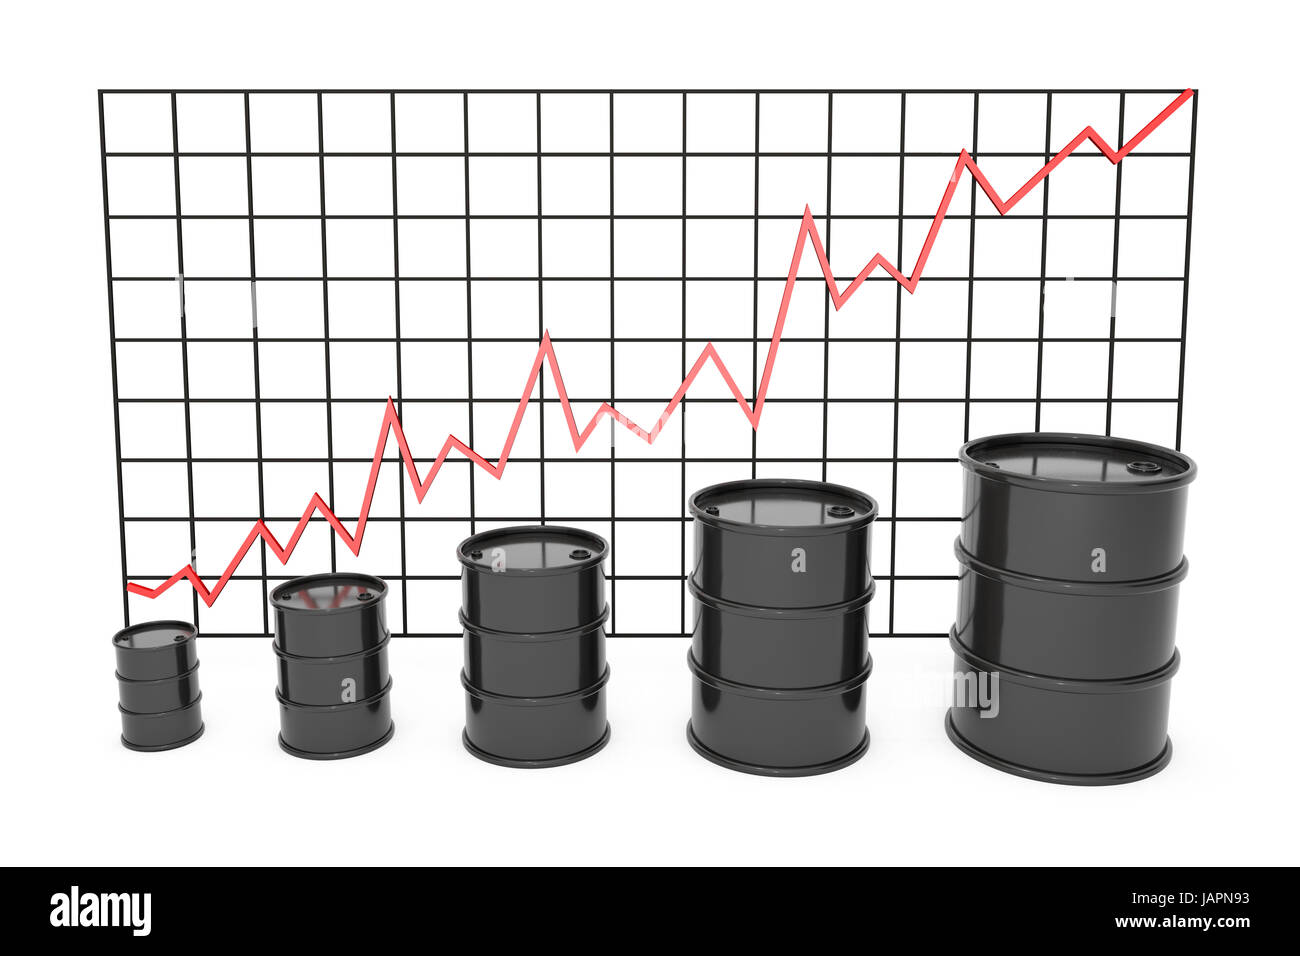 Oil Stock Chart